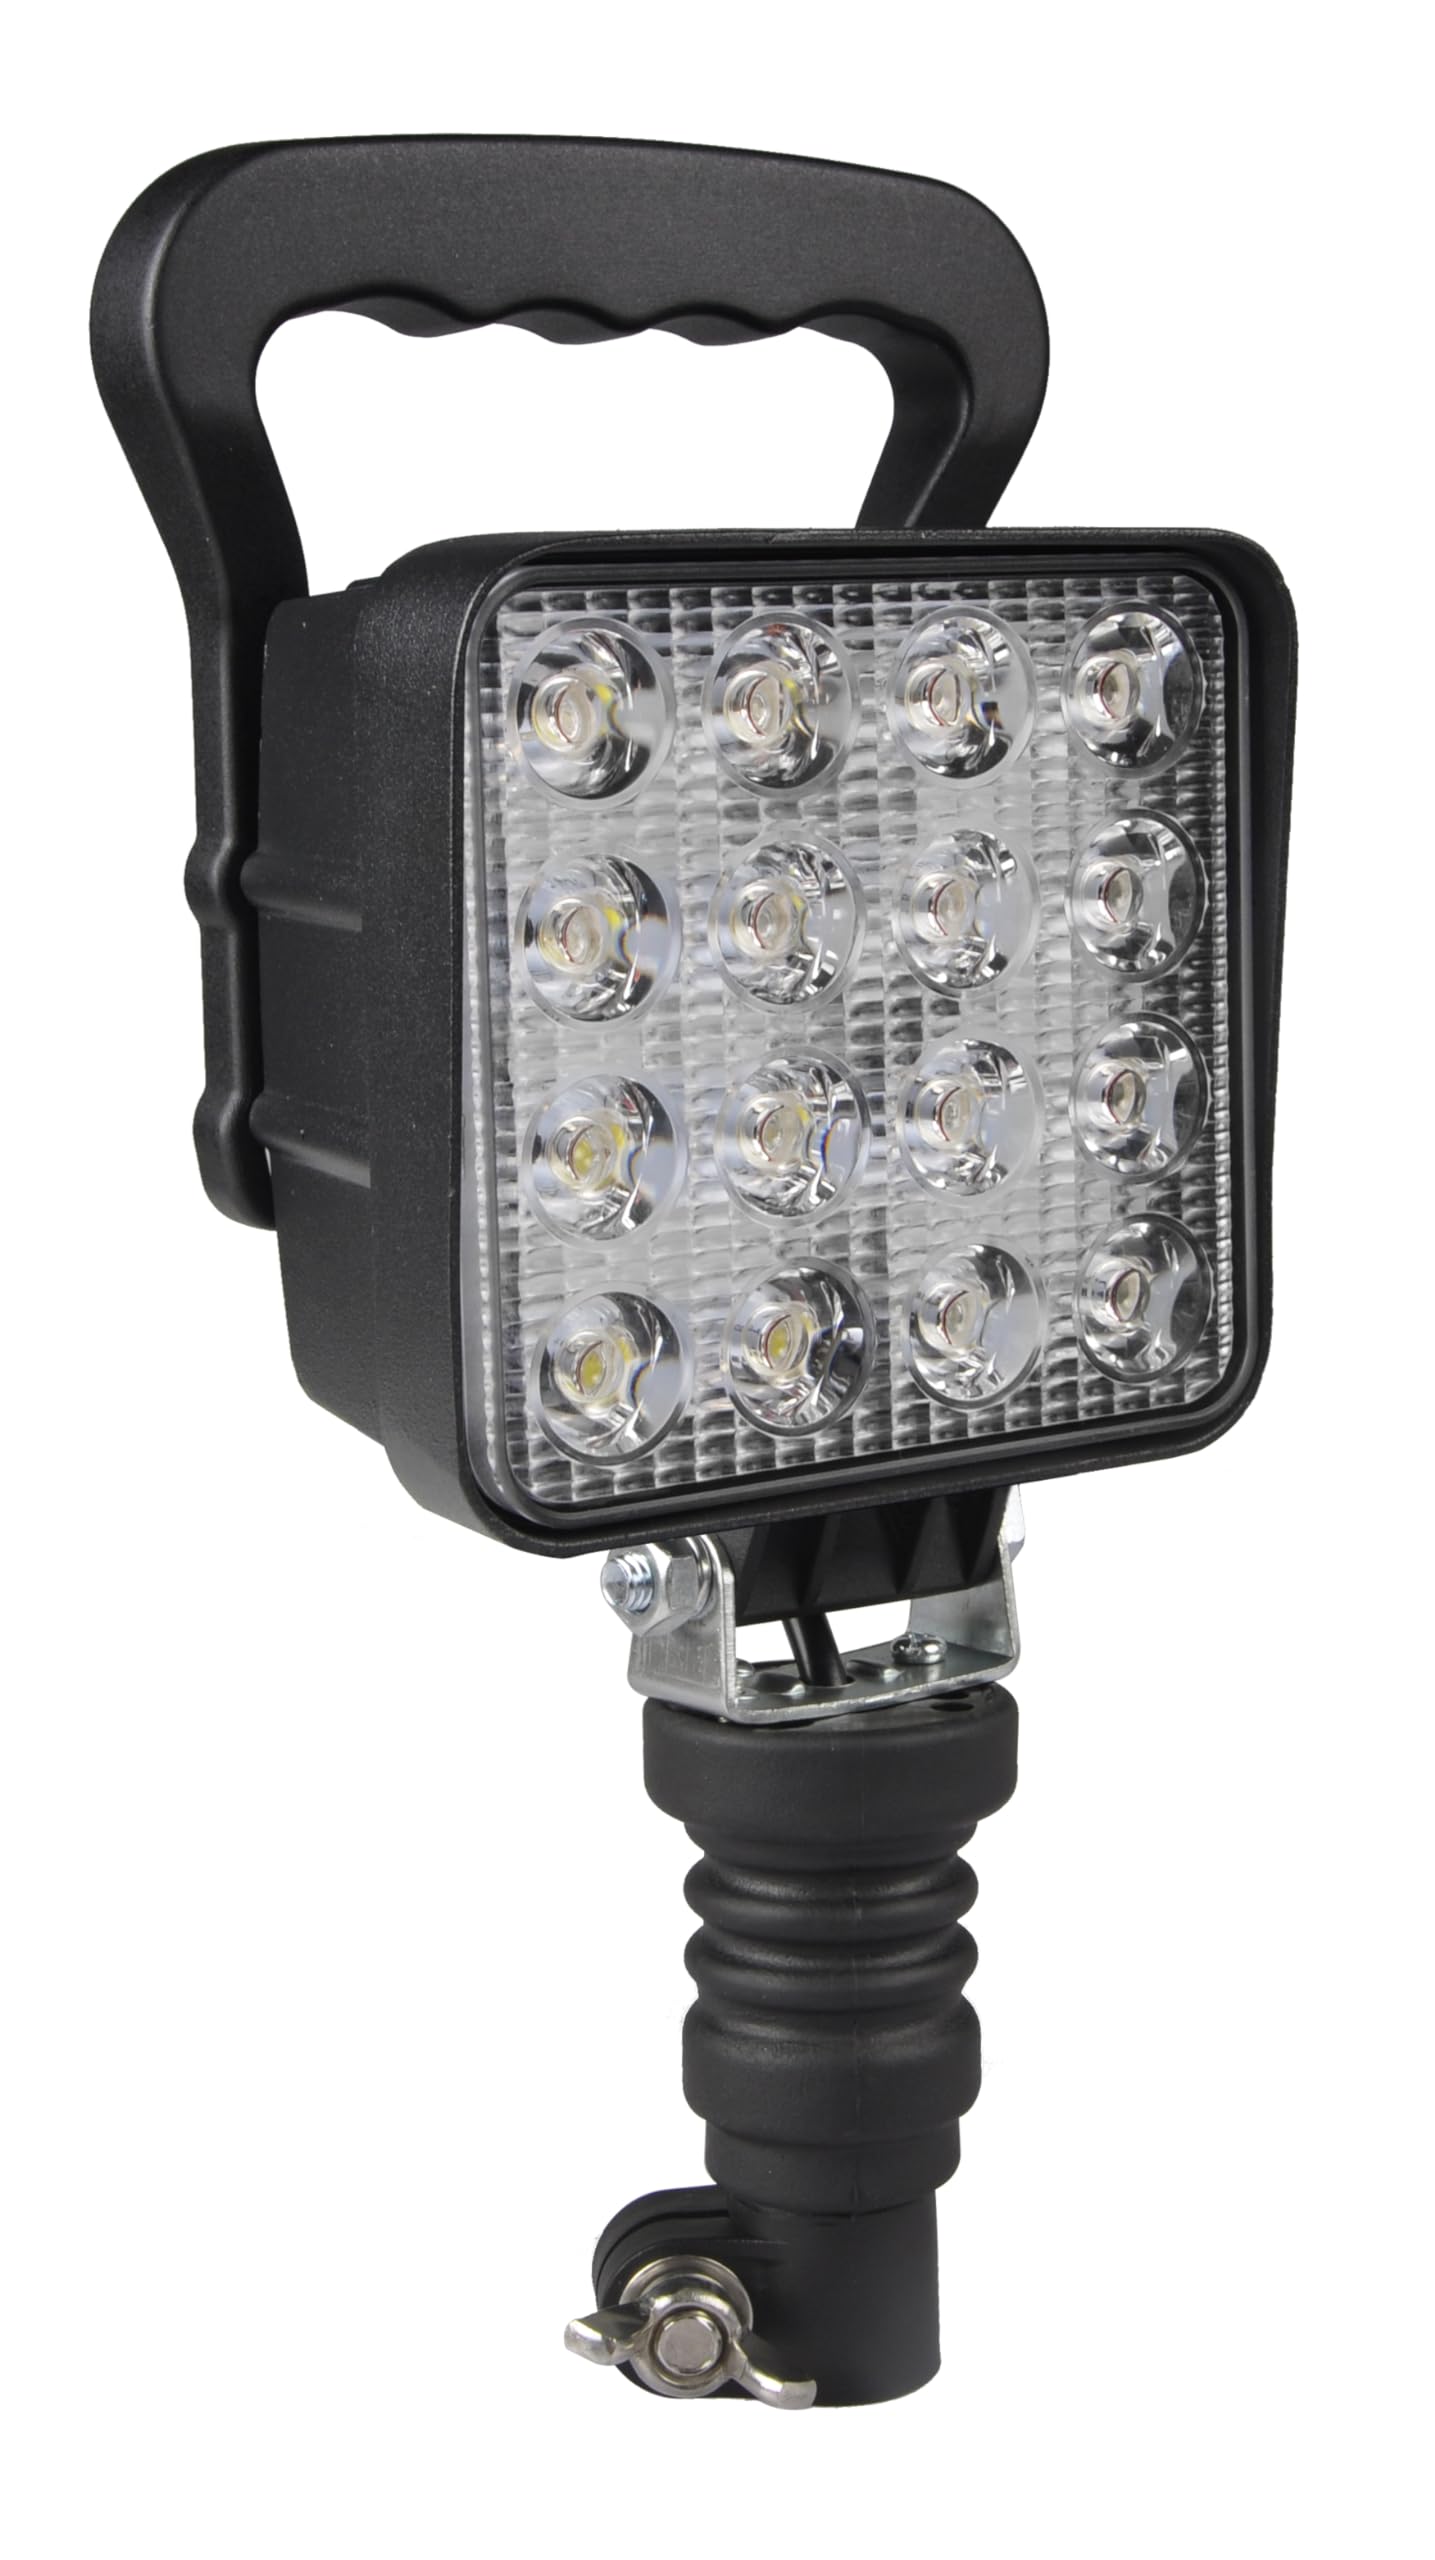 LED-Arbeitsscheinwerfer mit 48 W für landwirtschaftliche Maschinen und Spezialfahrzeuge, leistungsstarke Beleuchtung mit 2.800 Lumen, Universalanker, DIN Spannung, 12-24 V, IP67, verstellbarer Sockel von Ryme Automotive